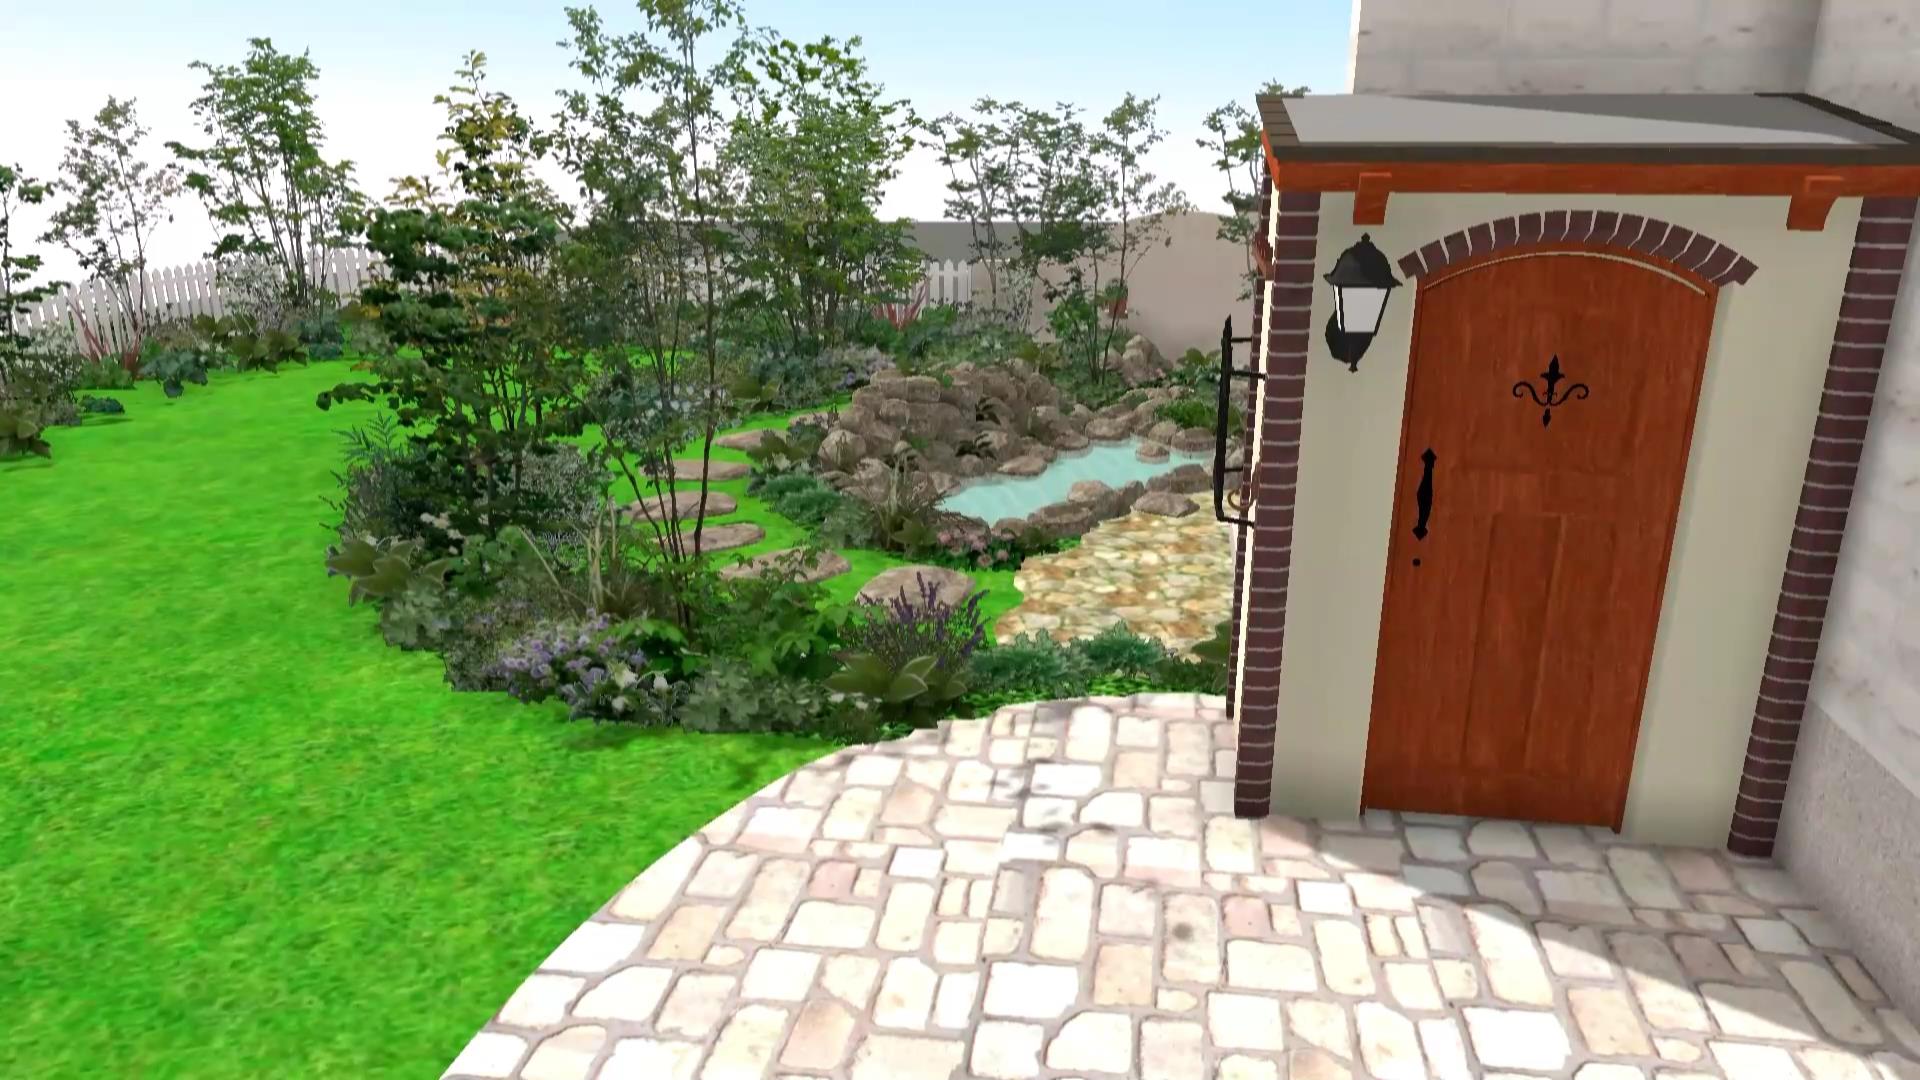 外構工事 動画 お客様だけのお庭イメージを3Dで